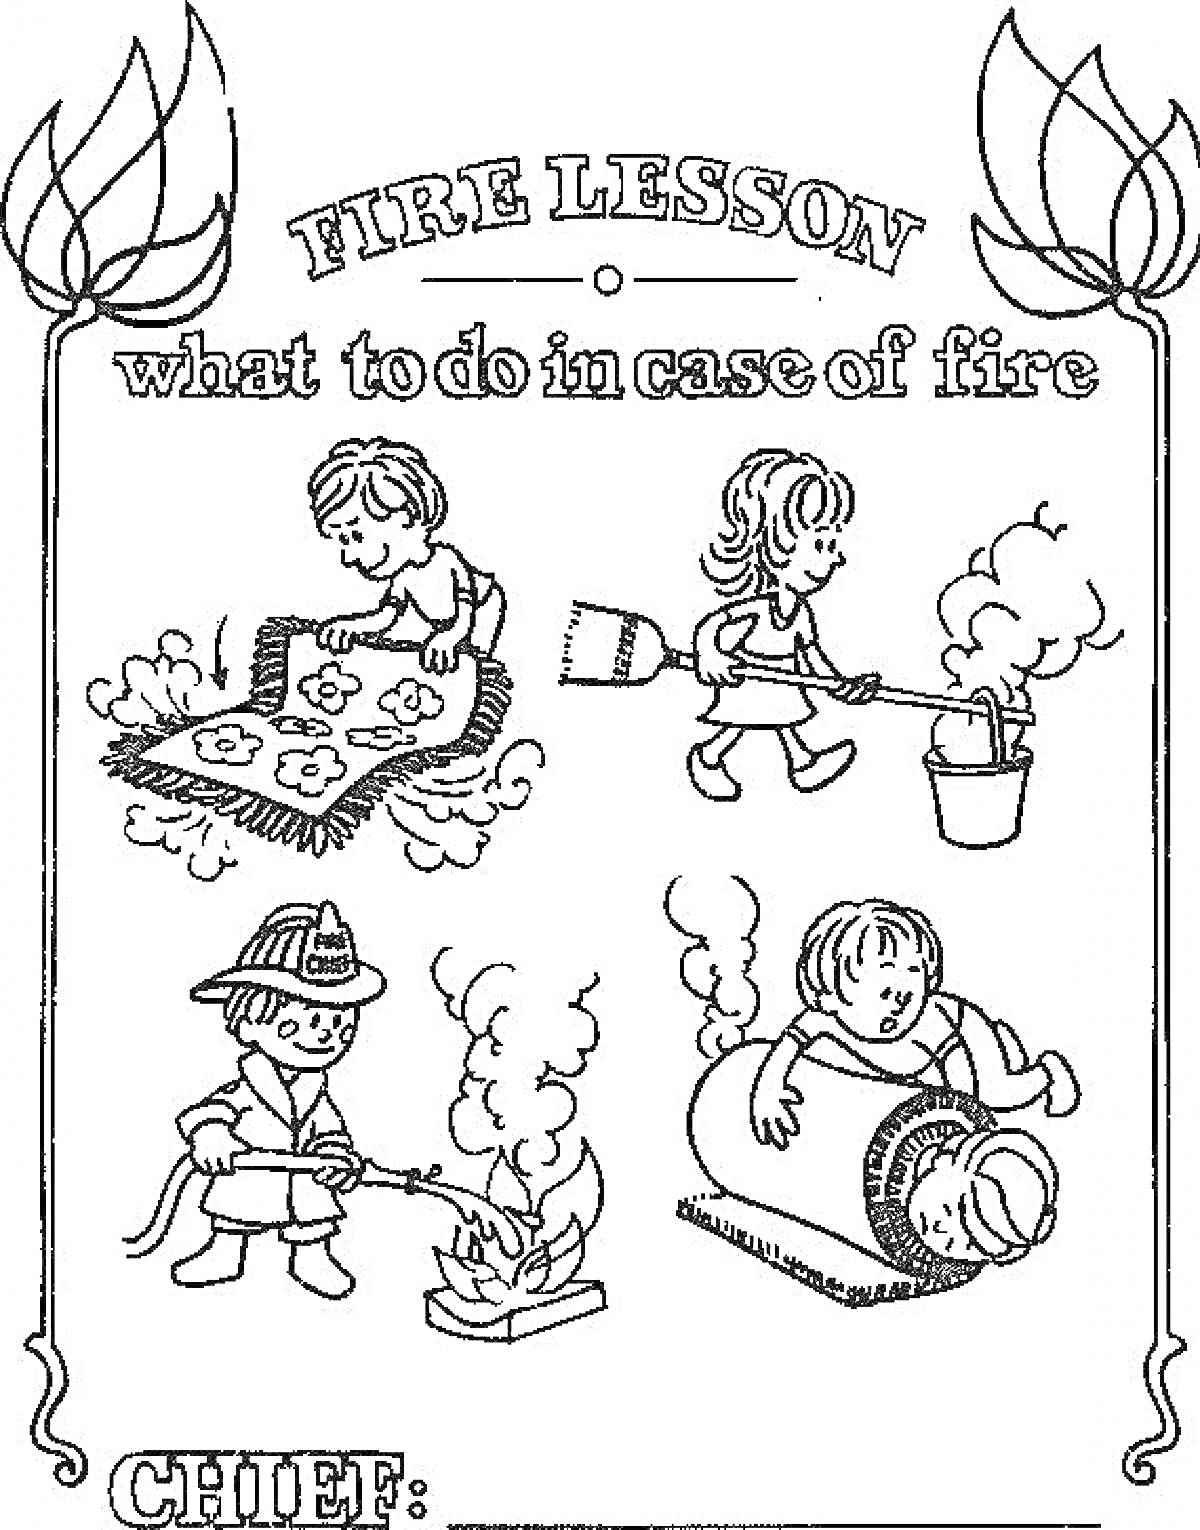 Пожарный урок: что делать в случае пожара - дети гасят огонь ковриком, взрослый тушит огонь водой, пожарный показывает как потушить огонь, ребенок укрывается от дыма под одеялом